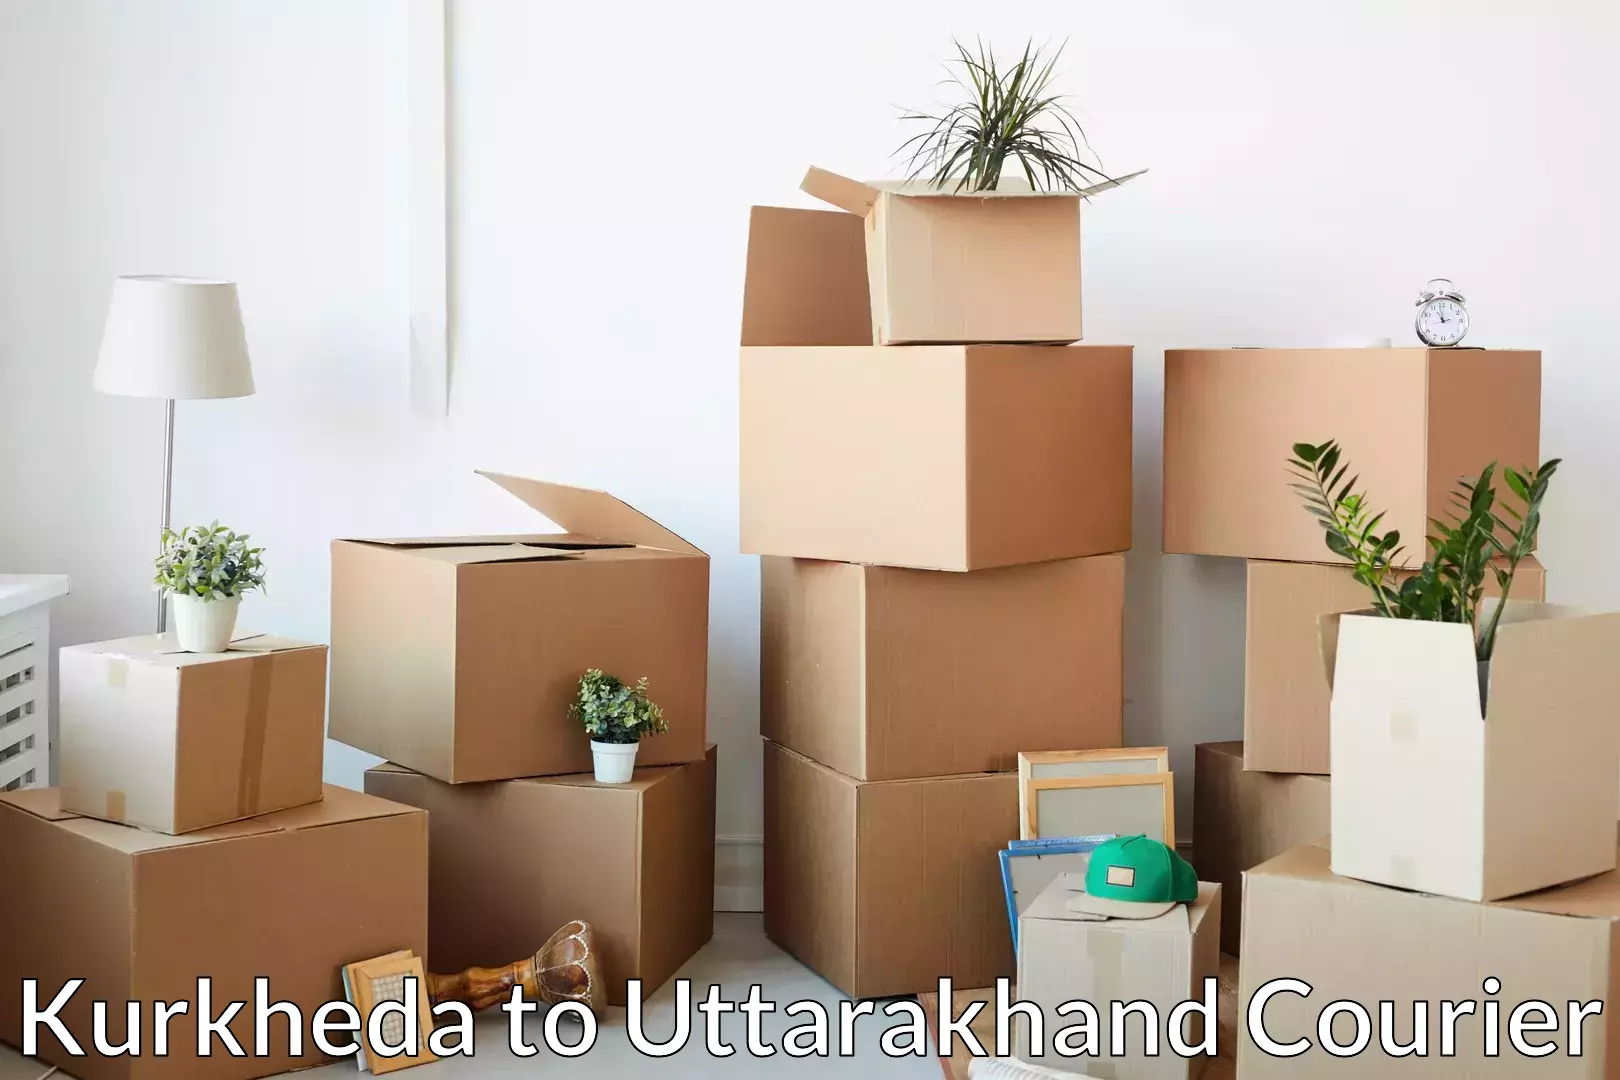 Efficient moving company Kurkheda to Uttarakhand